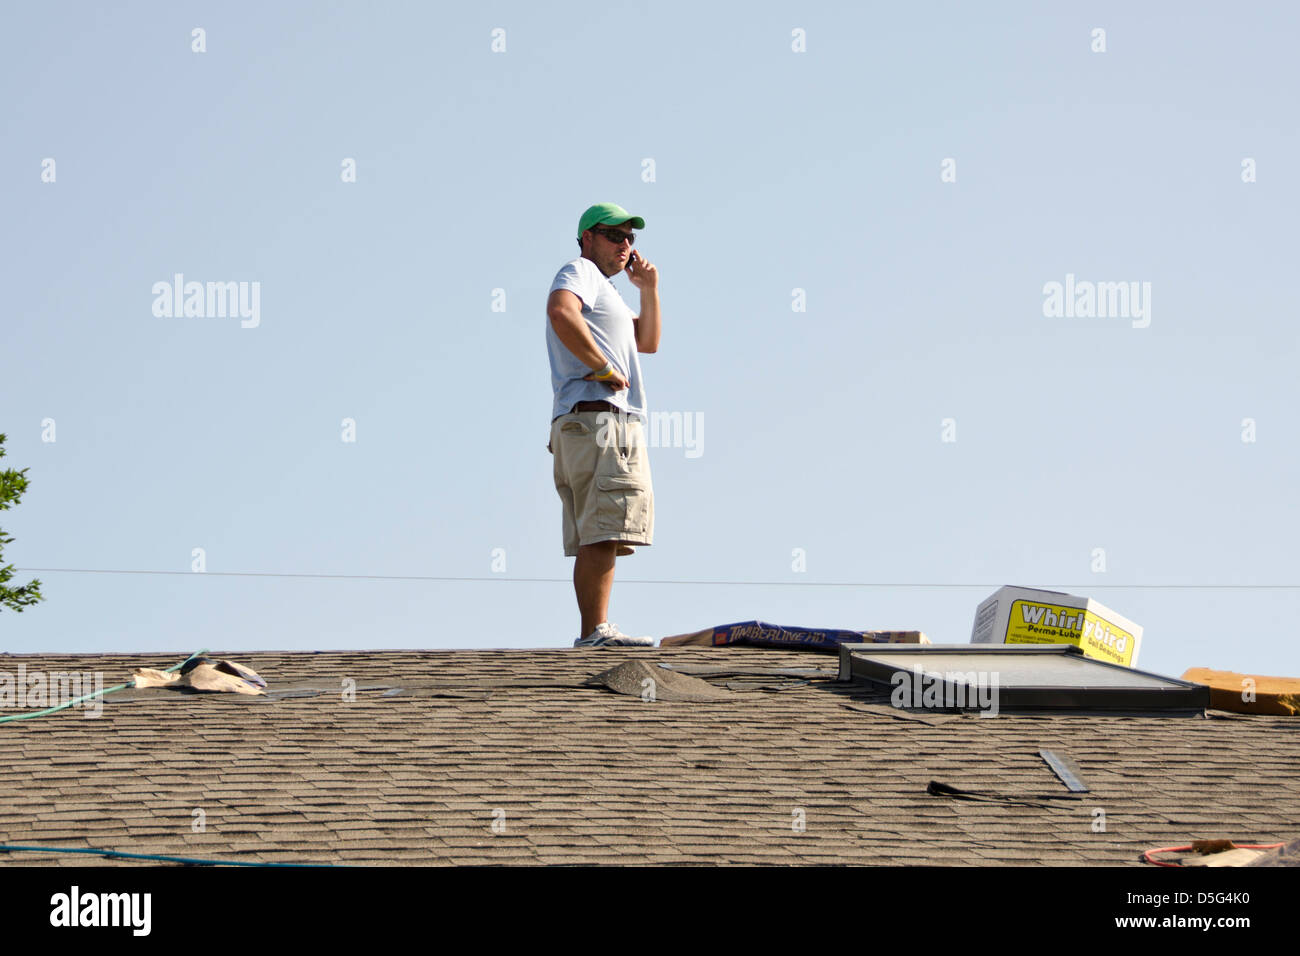 Un techado contratista está sobre un techo y conversaciones en el teléfono celular. Oklahoma, Estados Unidos. Foto de stock